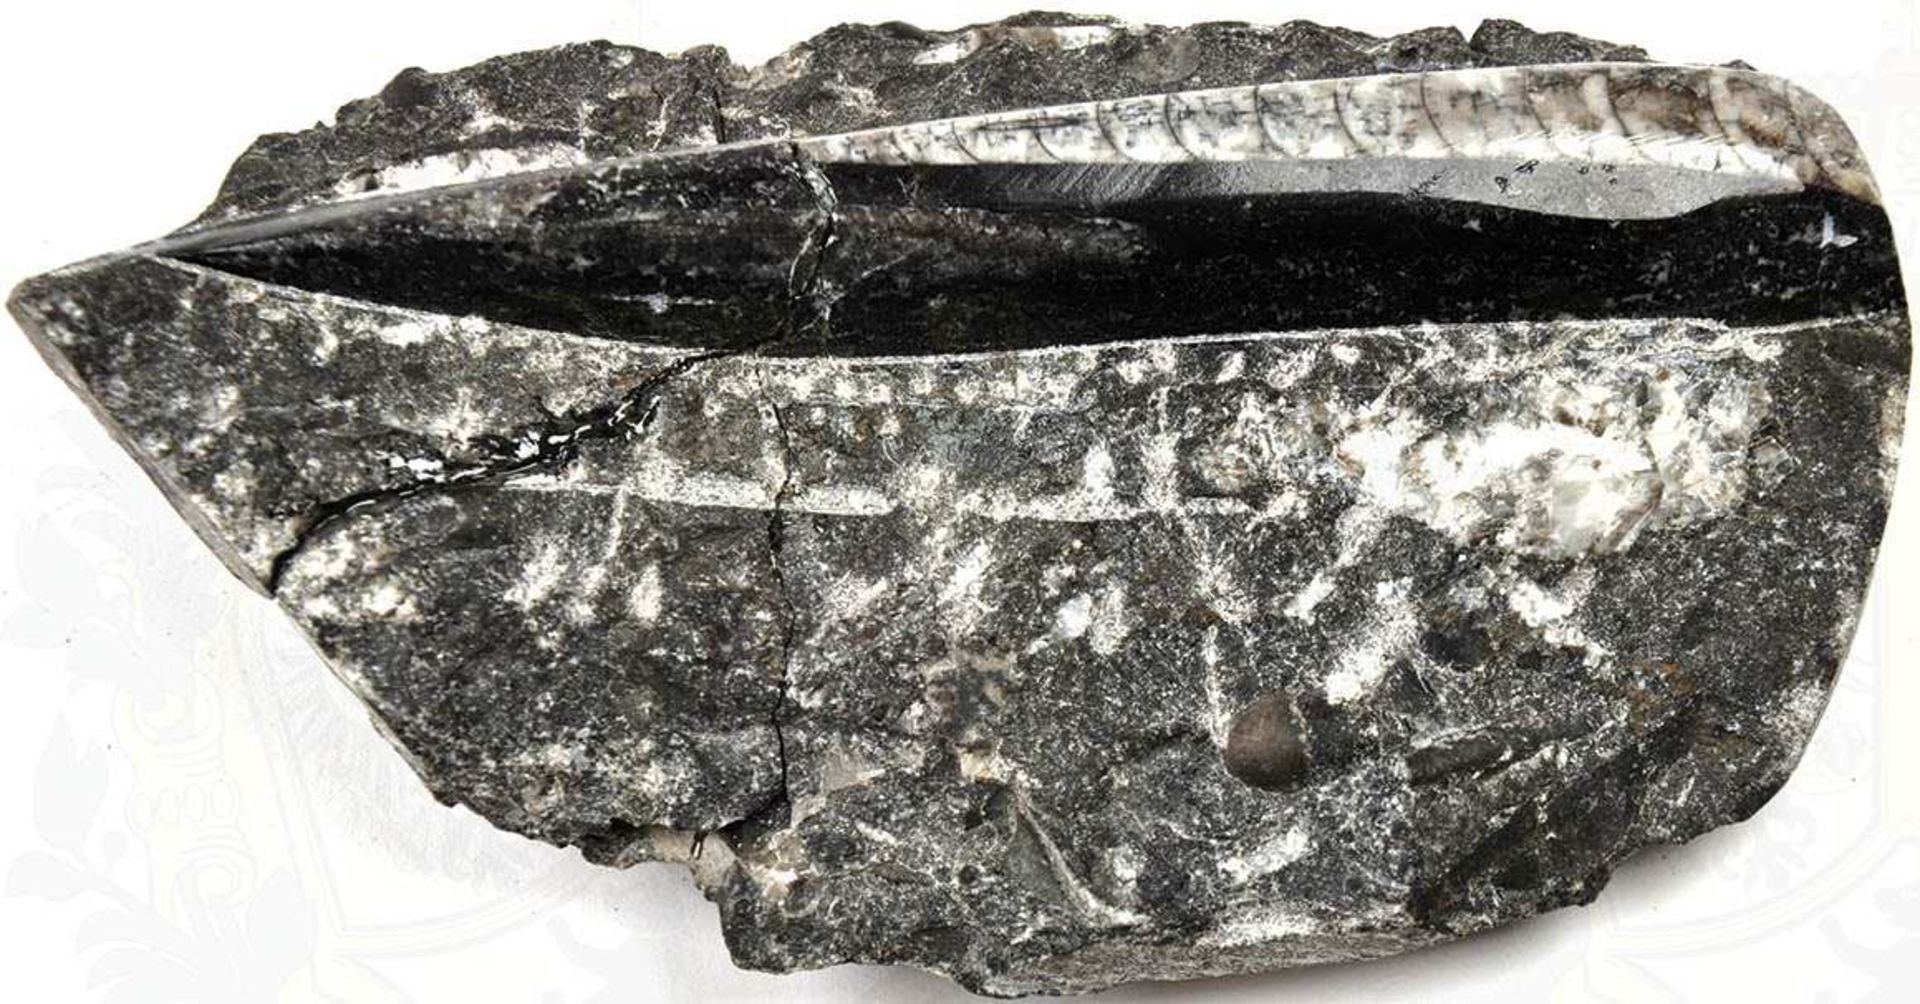 VERSTEINERUNG, "Fossil", verm. Donnerkeil, in kristallinem Gestein, zu Dekorationszwecken